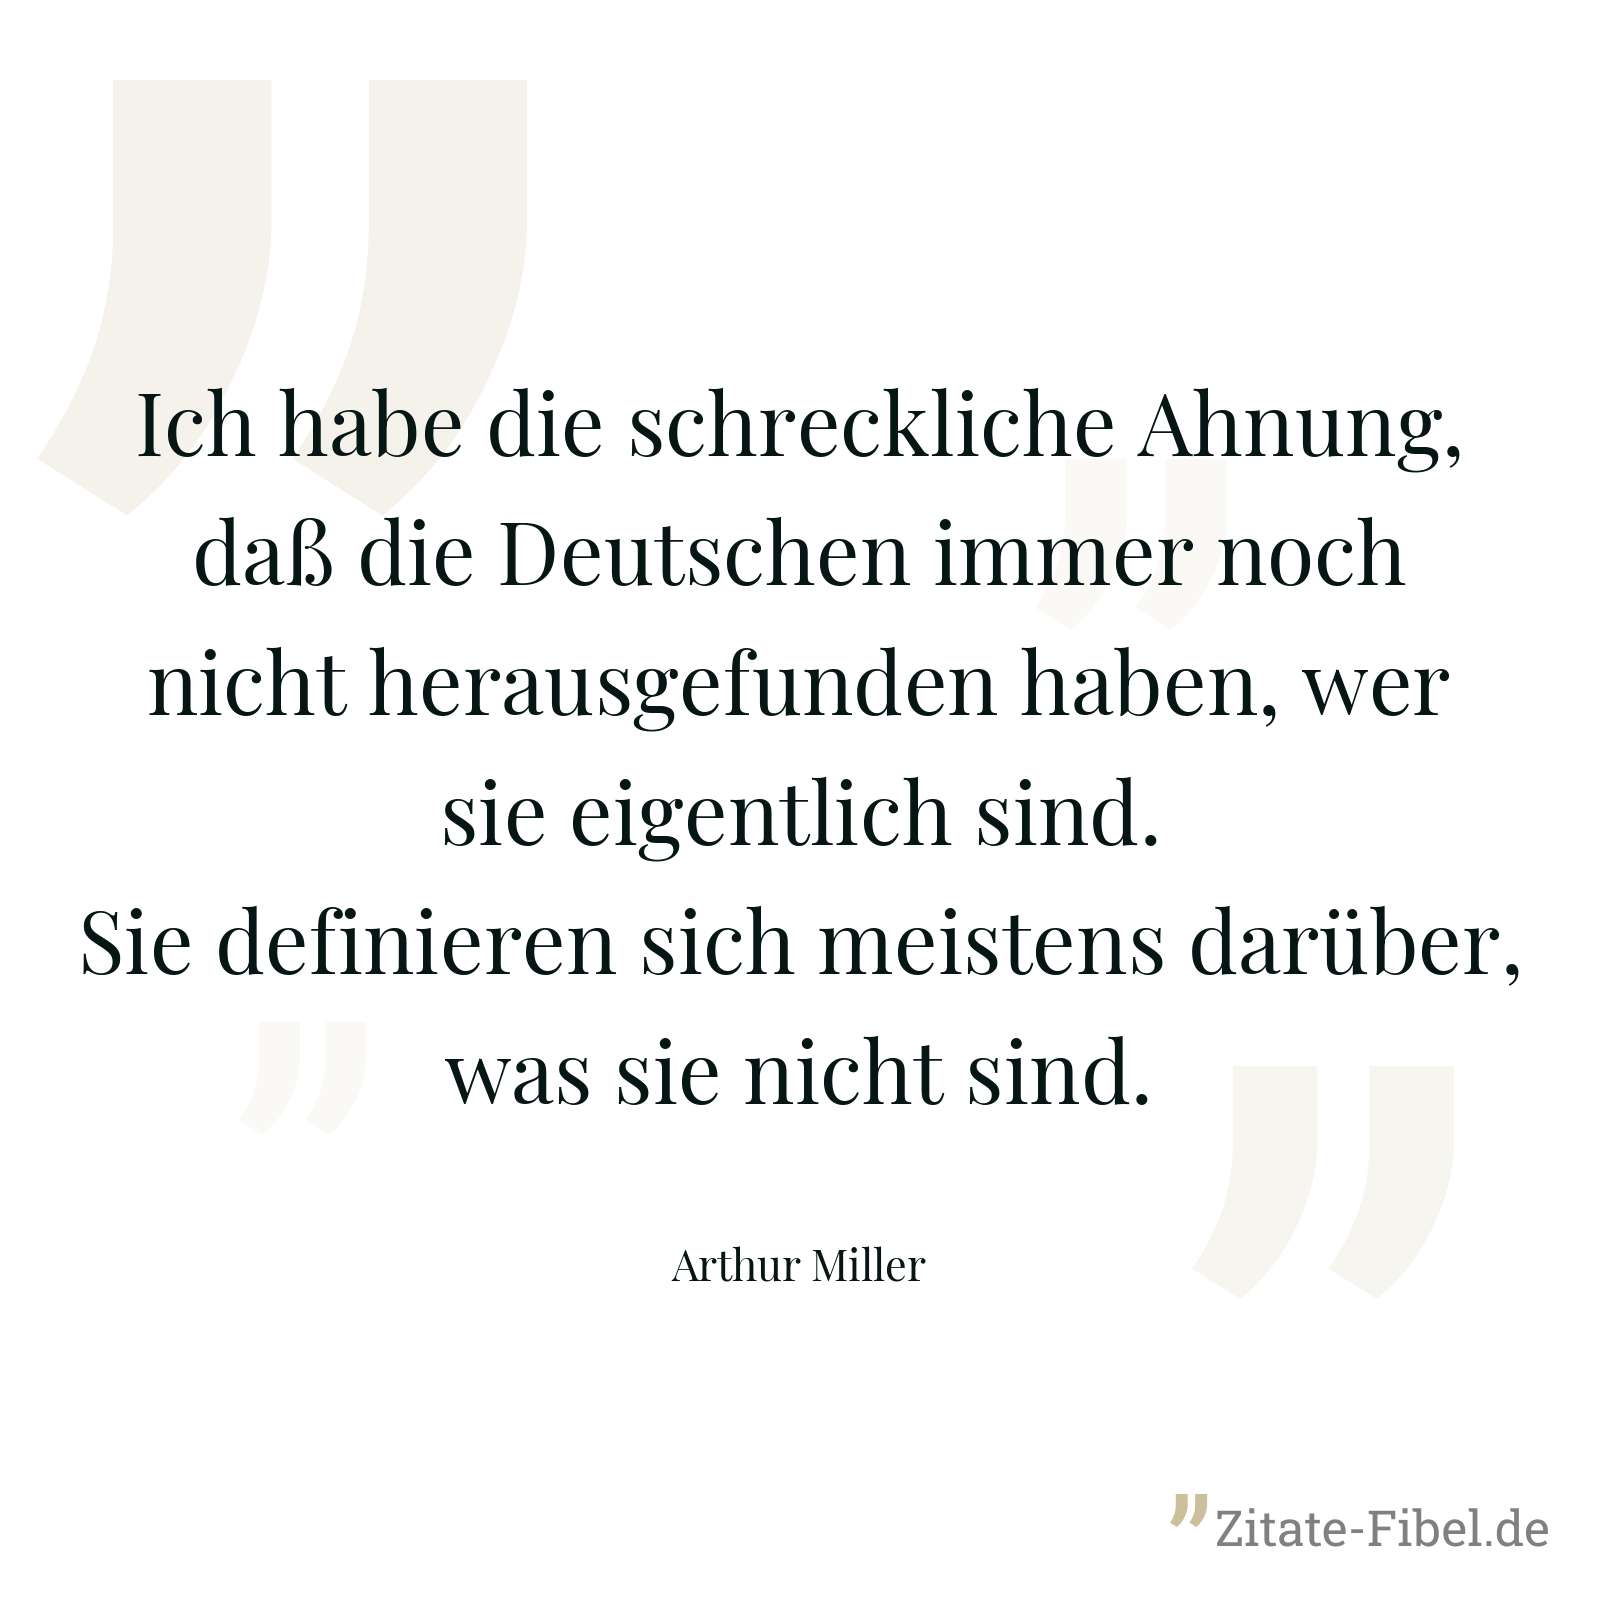 Ich habe die schreckliche Ahnung, daß die Deutschen immer noch nicht herausgefunden haben, wer sie eigentlich sind. Sie definieren sich meistens darüber, was sie nicht sind. - Arthur Miller